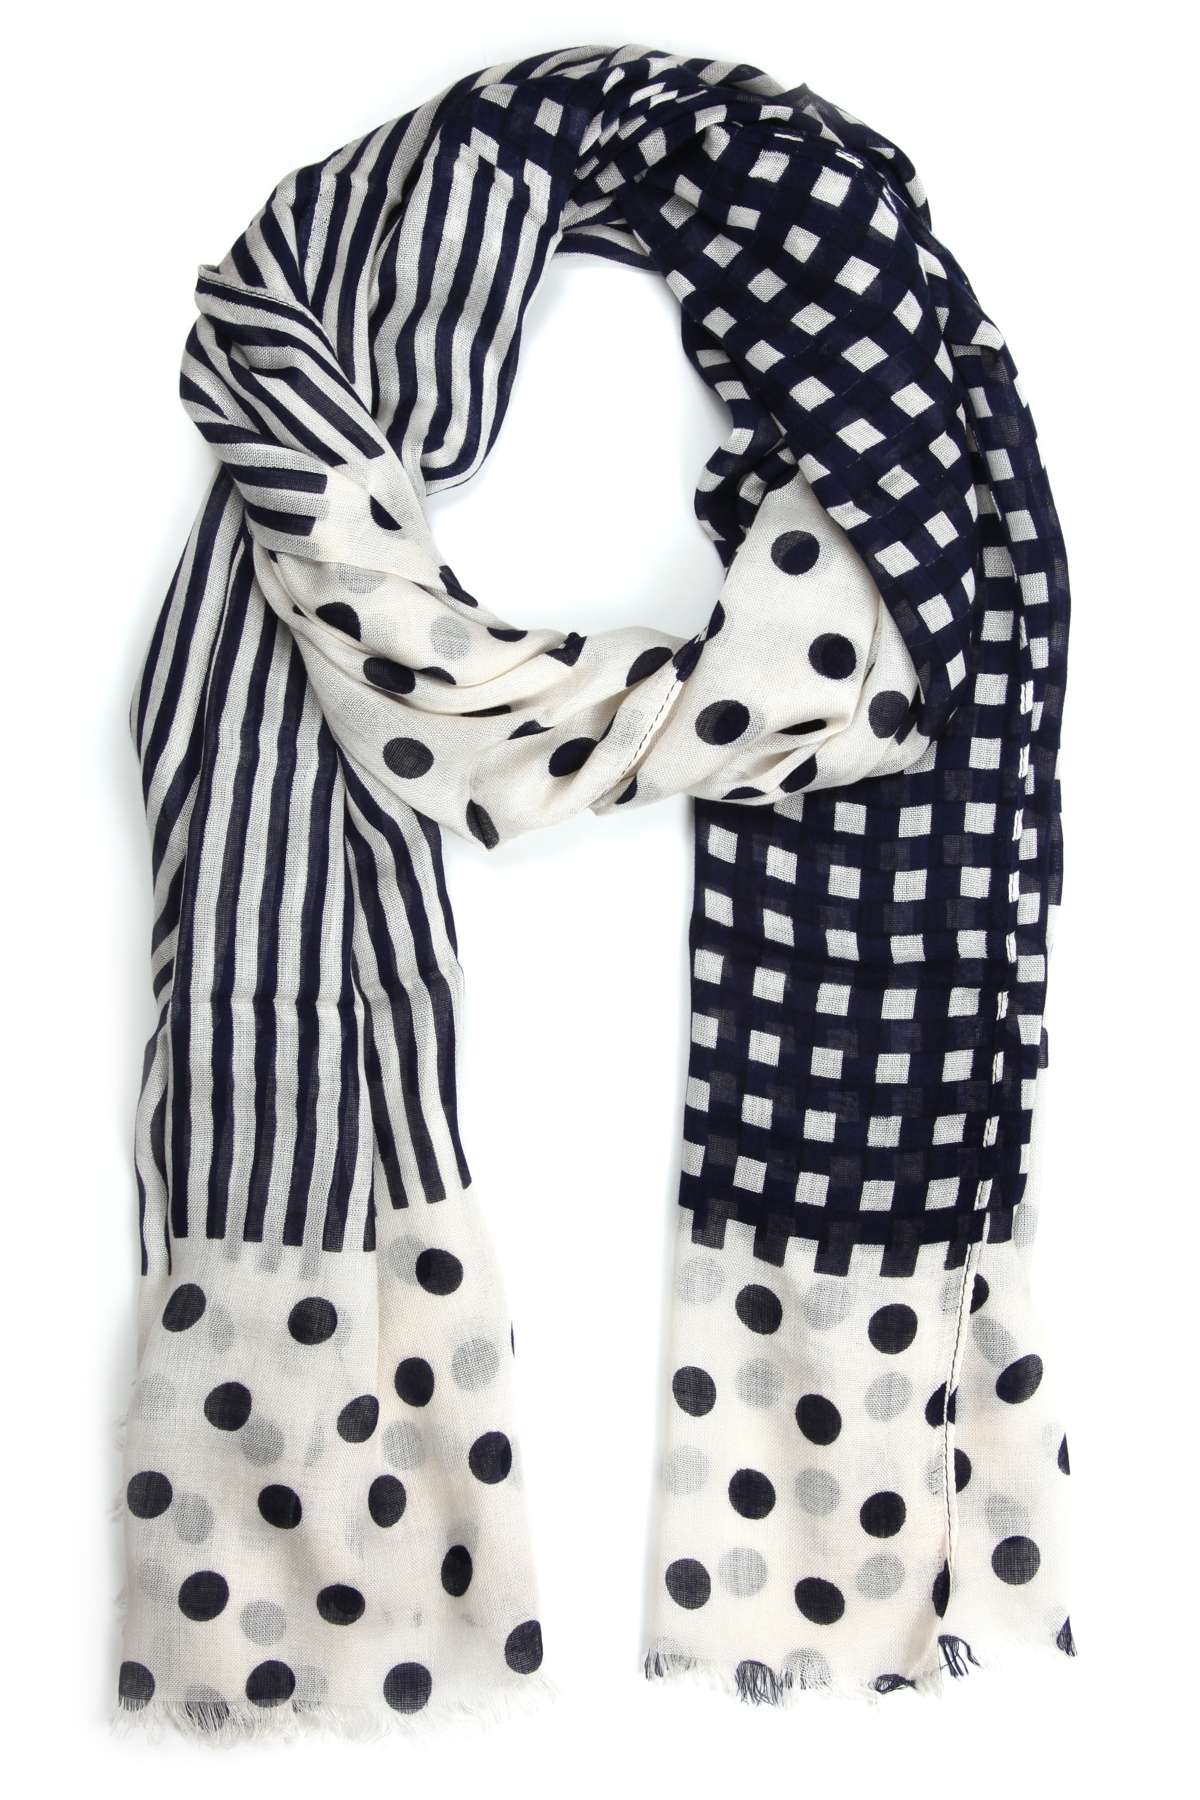 Модный шарф (1 шт.) в дизайне с точками, сетками и полосками.